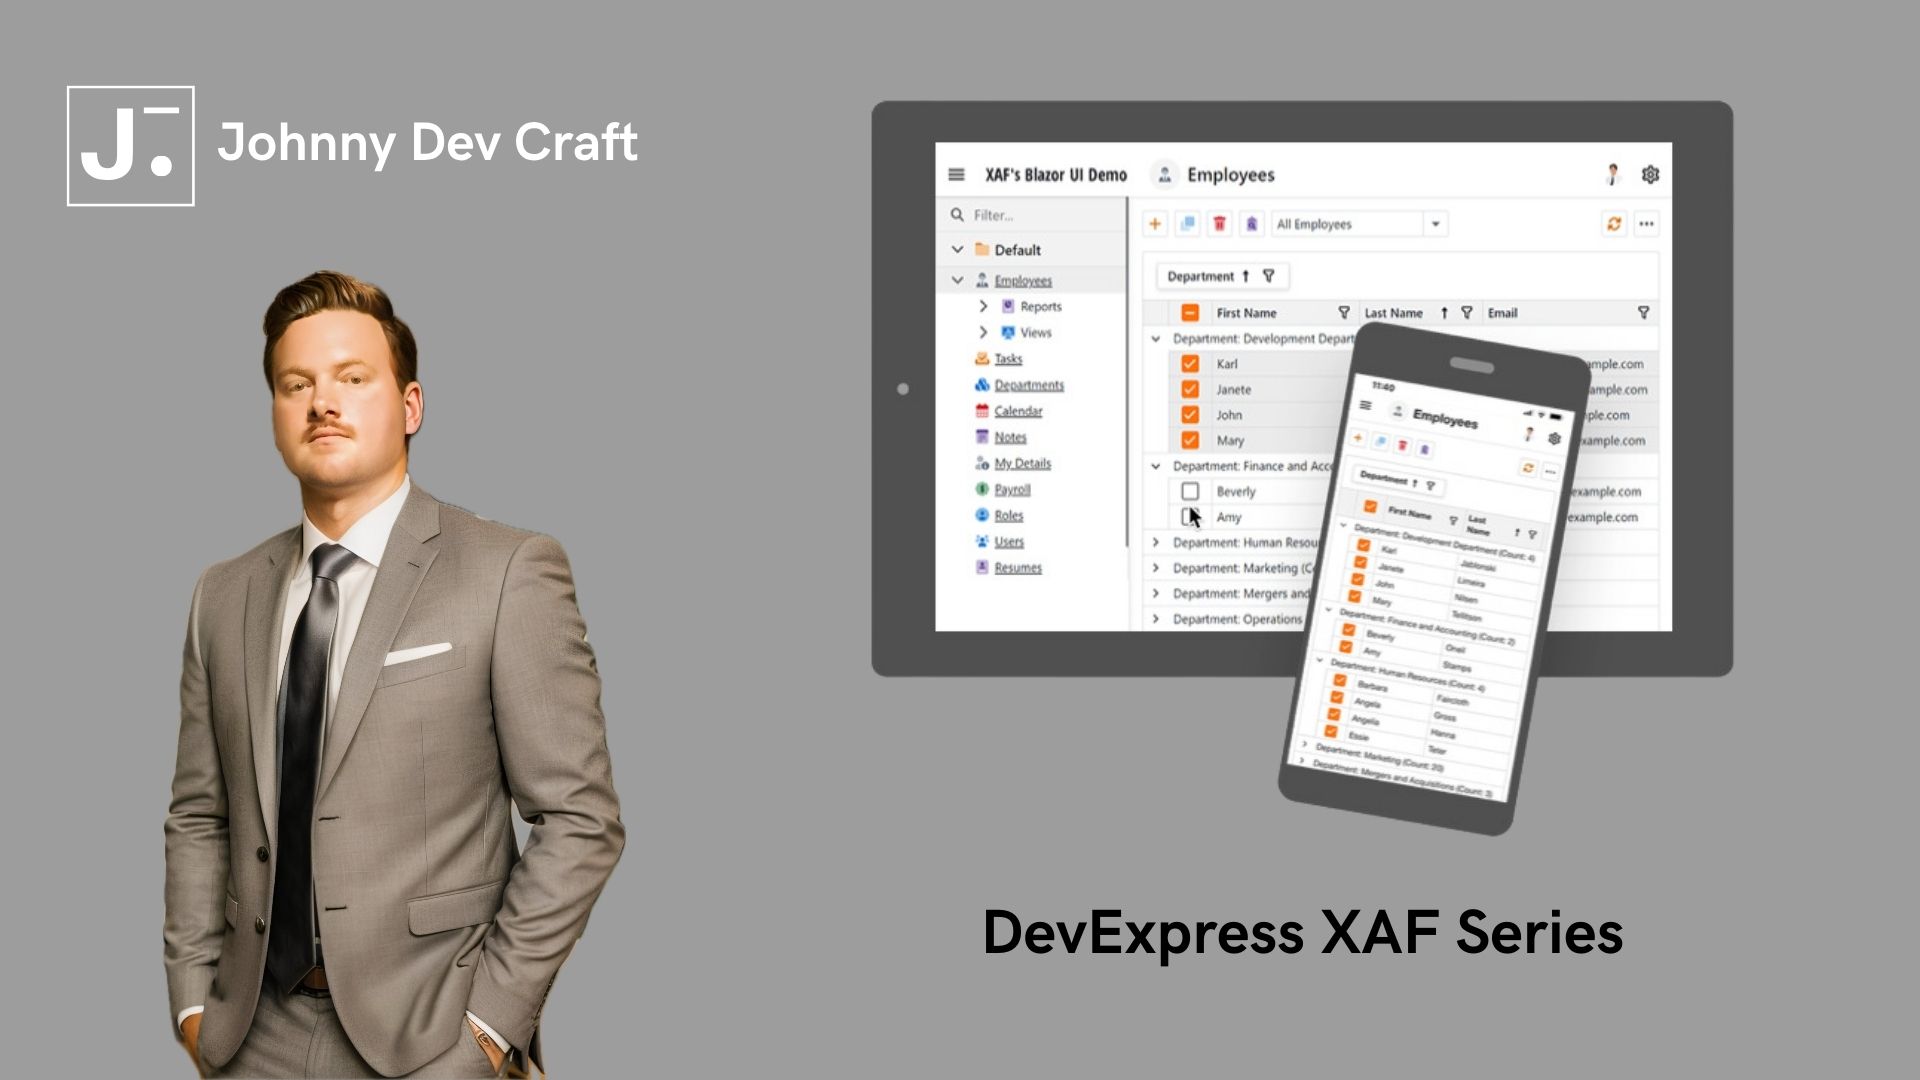 DevExpress XAF Series